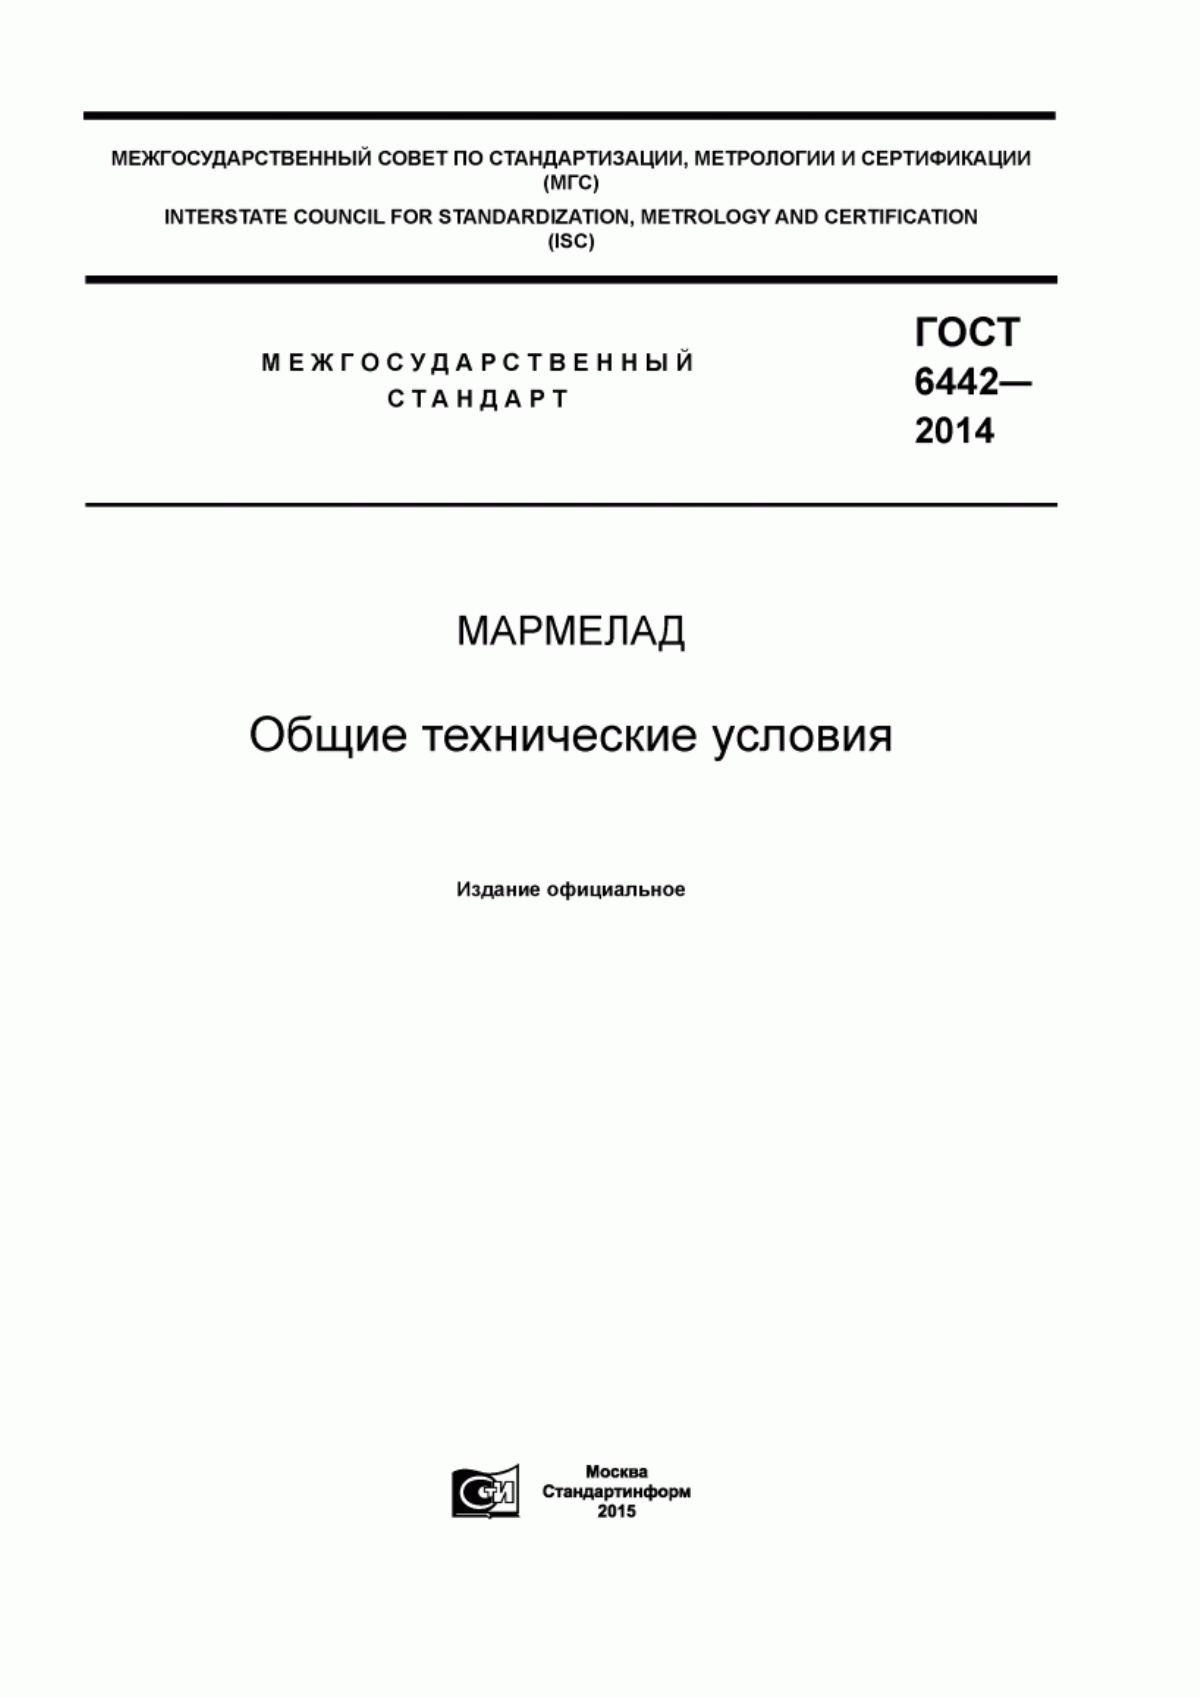 ГОСТ 6442-2014 Мармелад. Общие технические условия